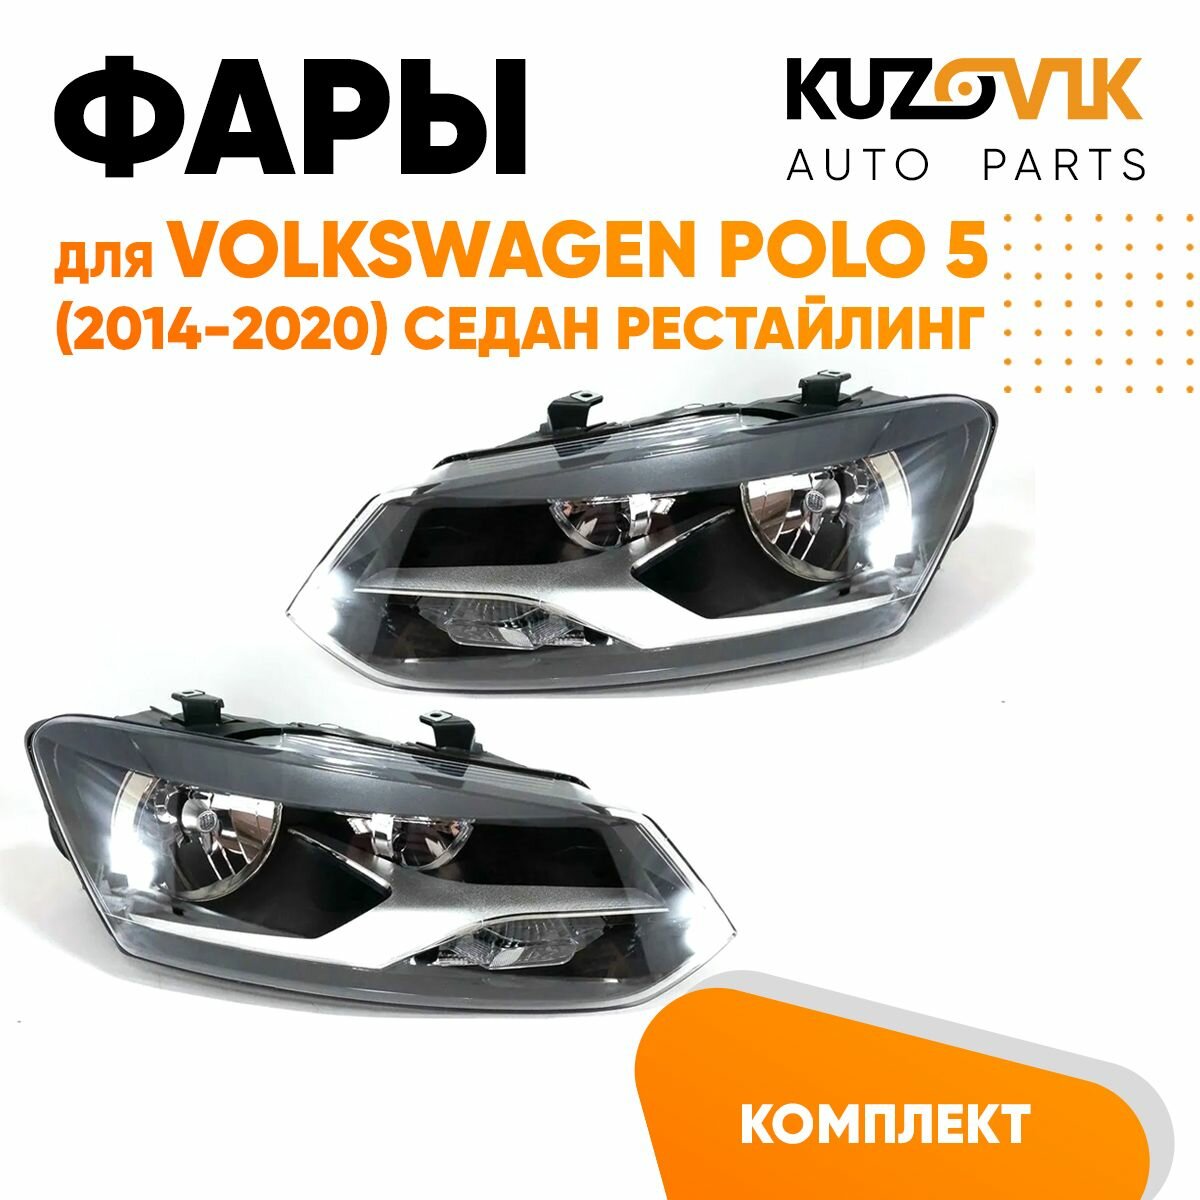 Фары комплект для Фольксваген Поло Volkswagen Polo 5 (2014-2020) седан рестайлинг